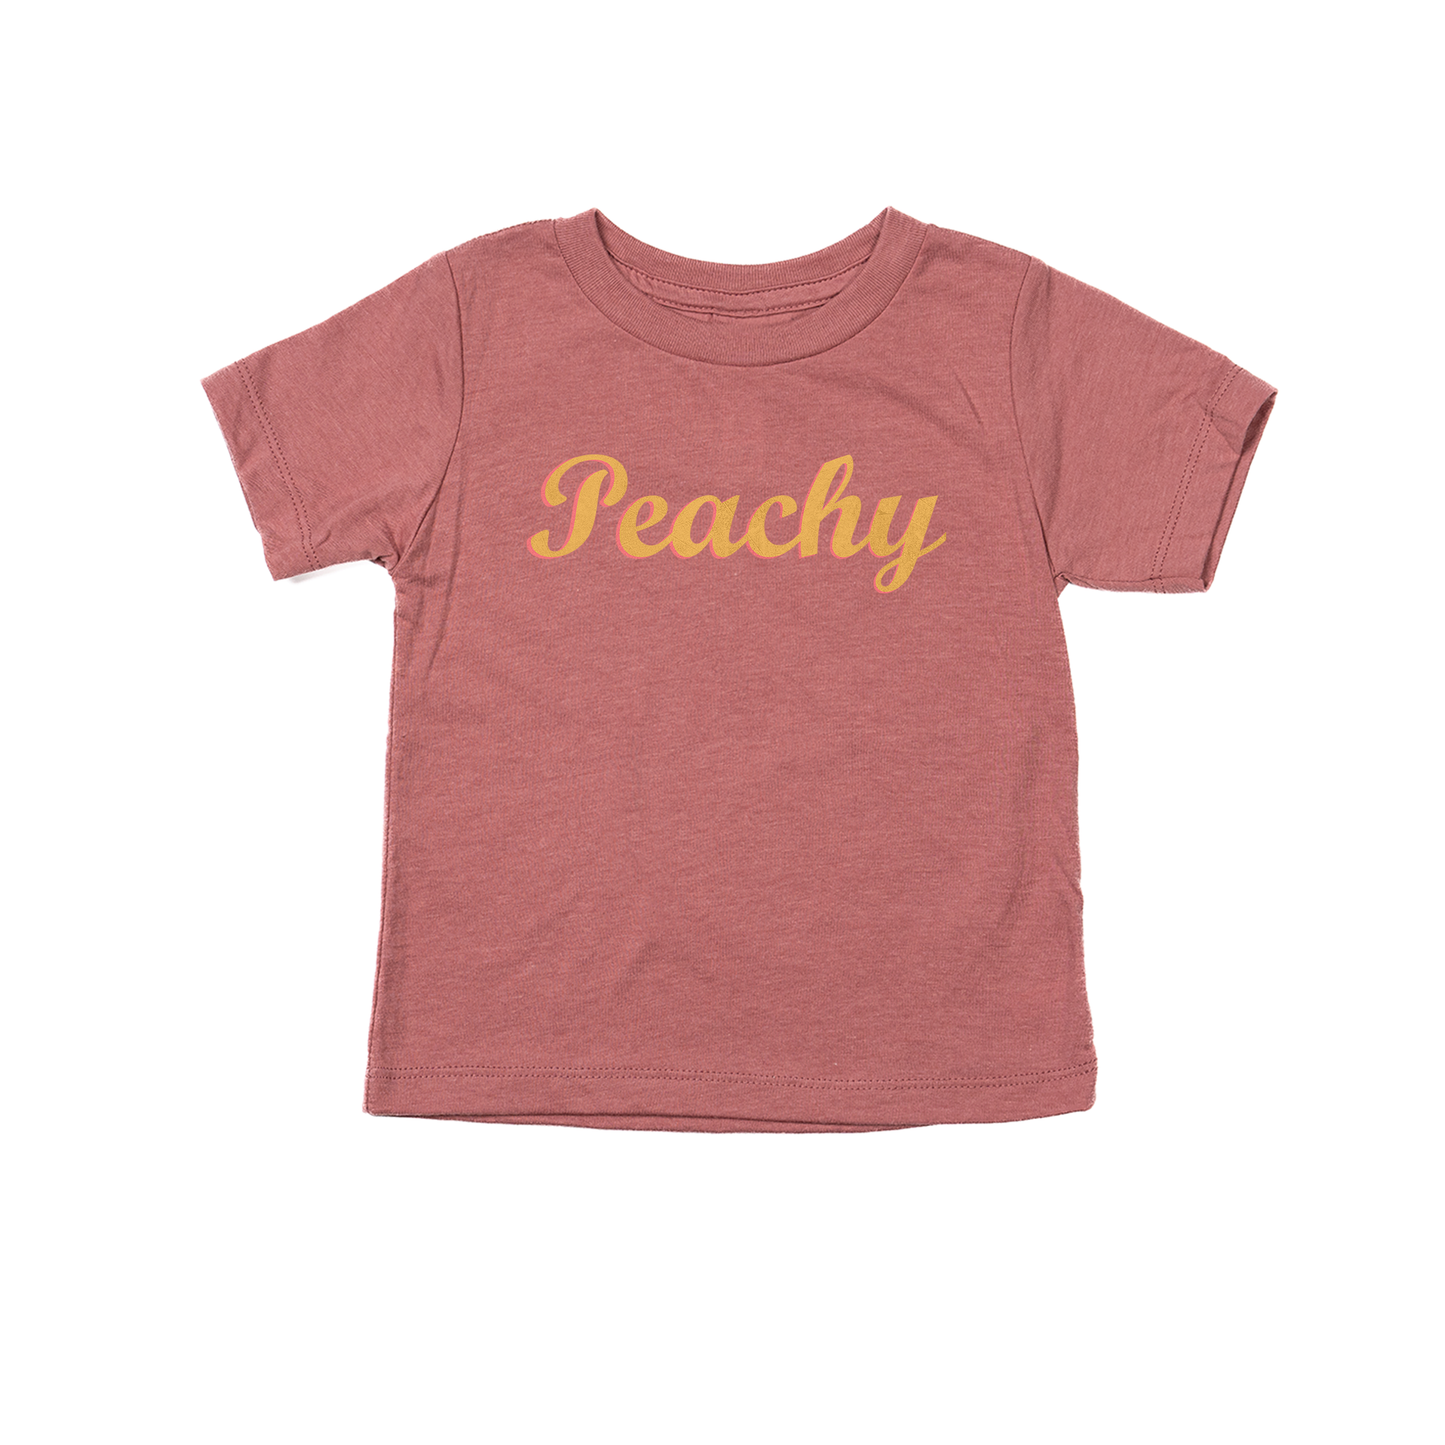 Peachy - Kids Tee (Mauve)